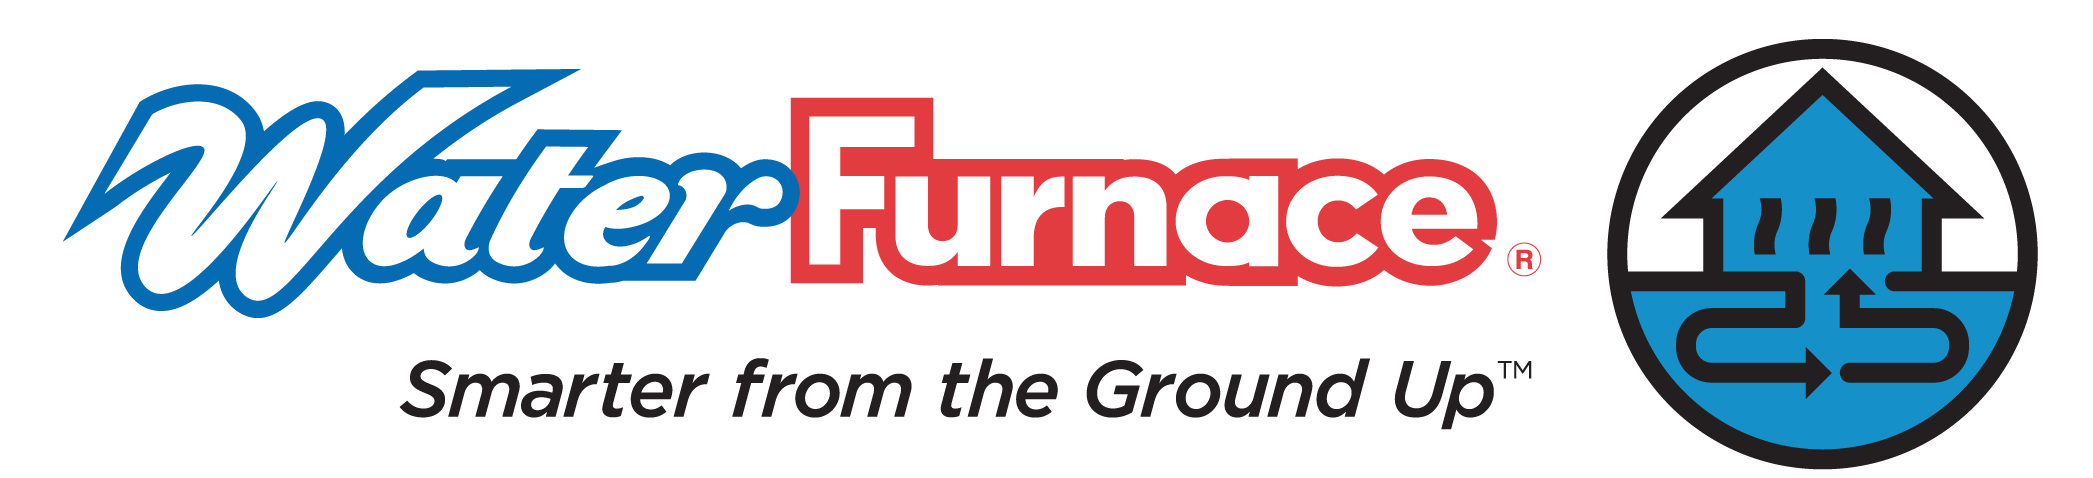 Water furnace logo